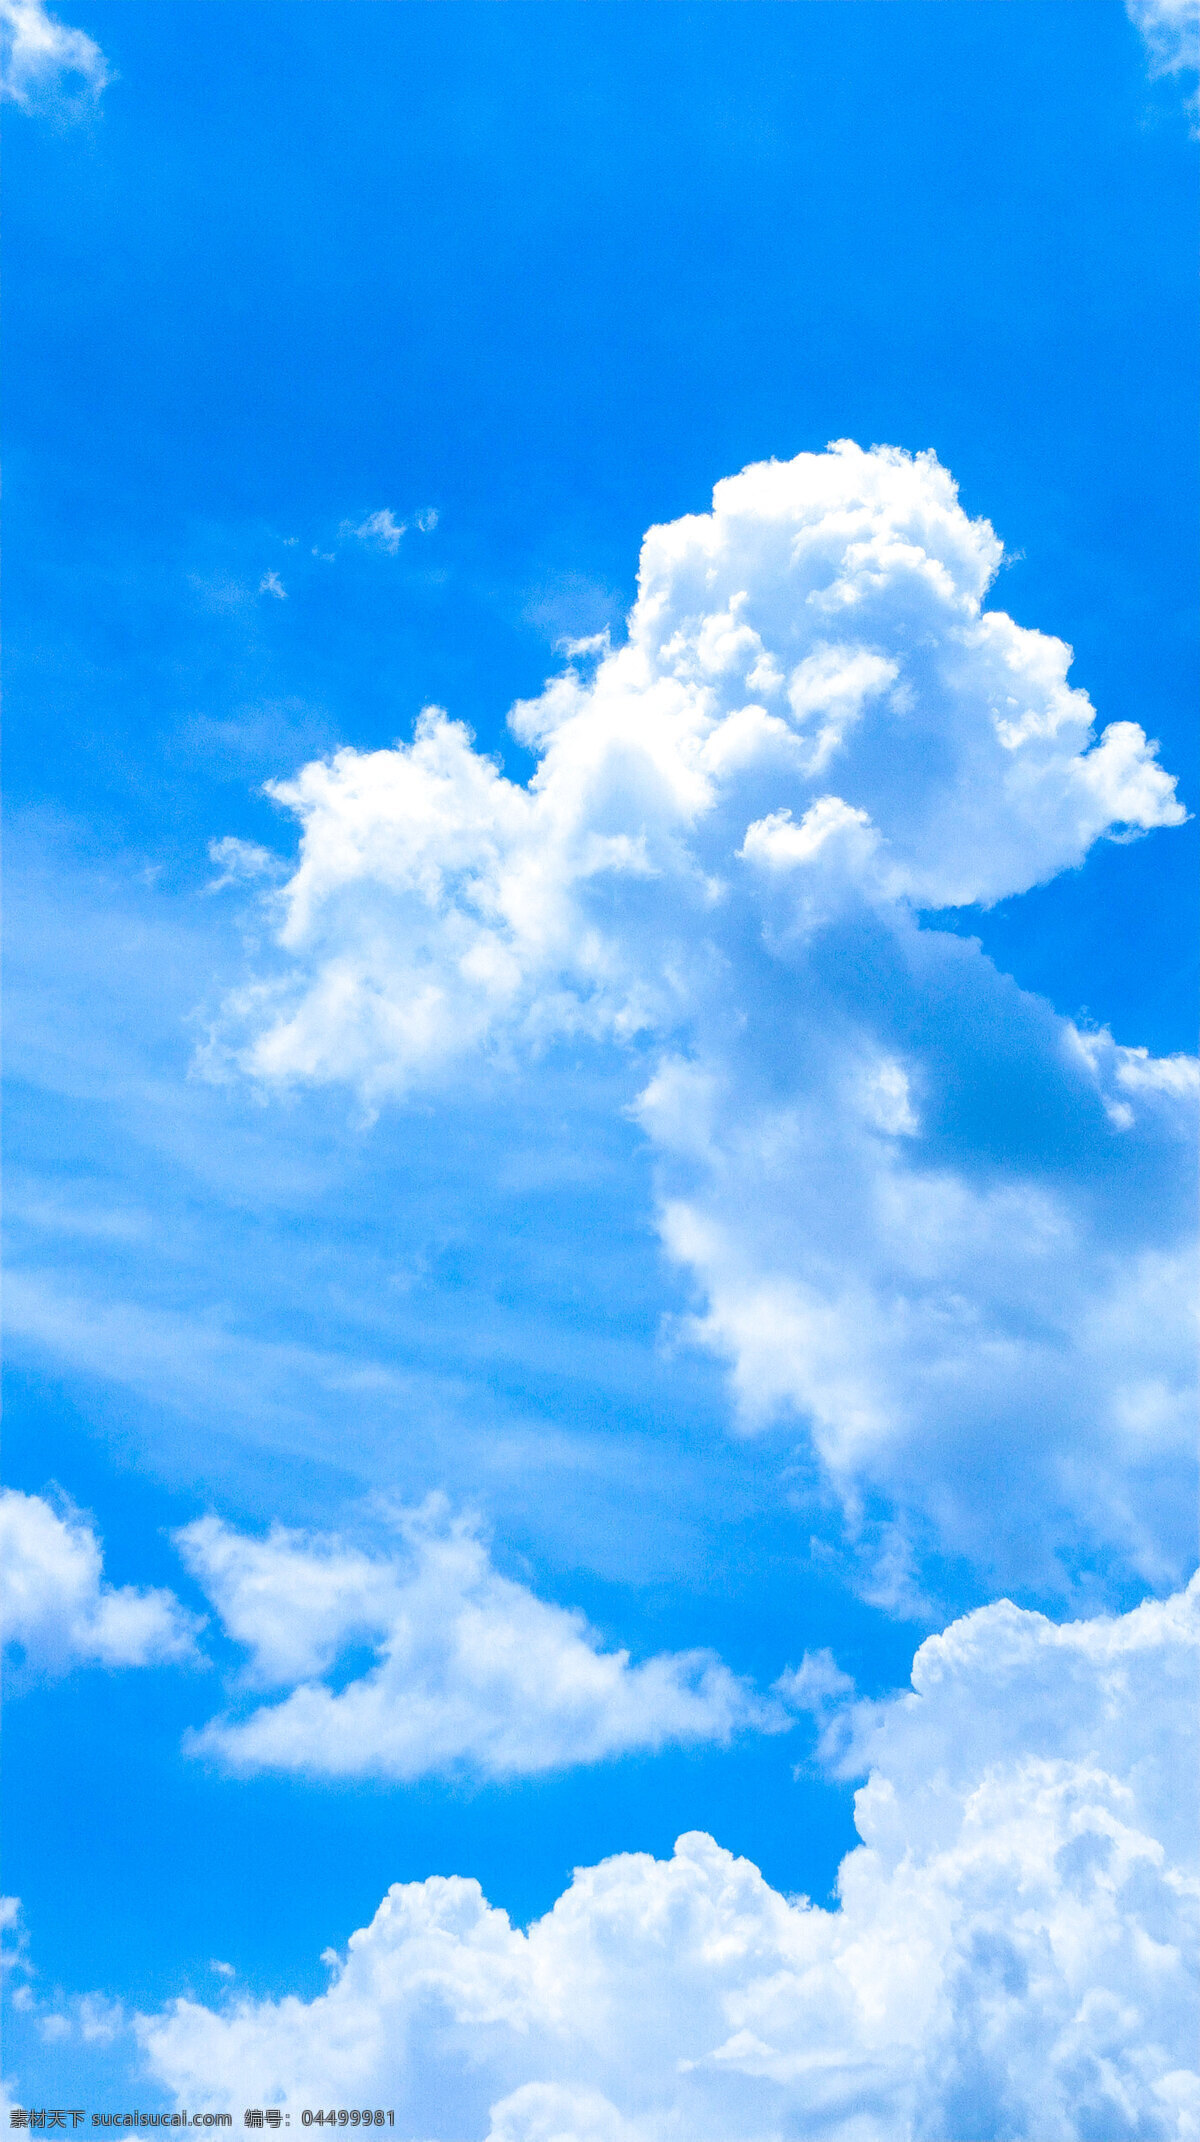 天空白云 夏日 天空 天空素材 蓝天 云 云朵 蓝天白云 风景 背景素材 祥云 城市 水 阳光 自然景观 自然风景